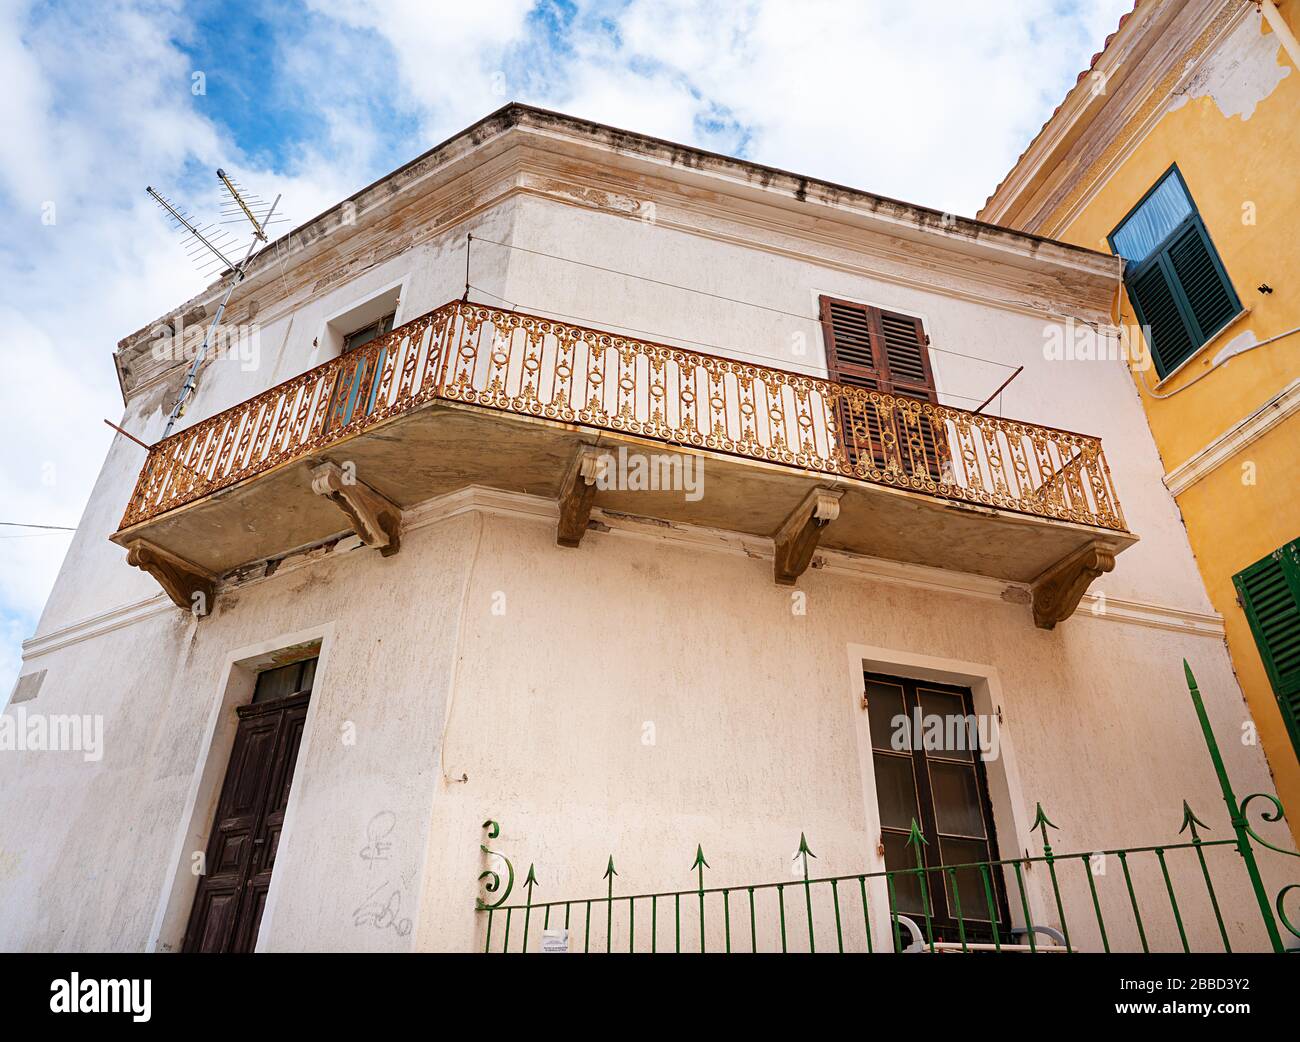 Case, appartamenti e stradine in Sardegna e sull'isola di la maddalena Foto Stock